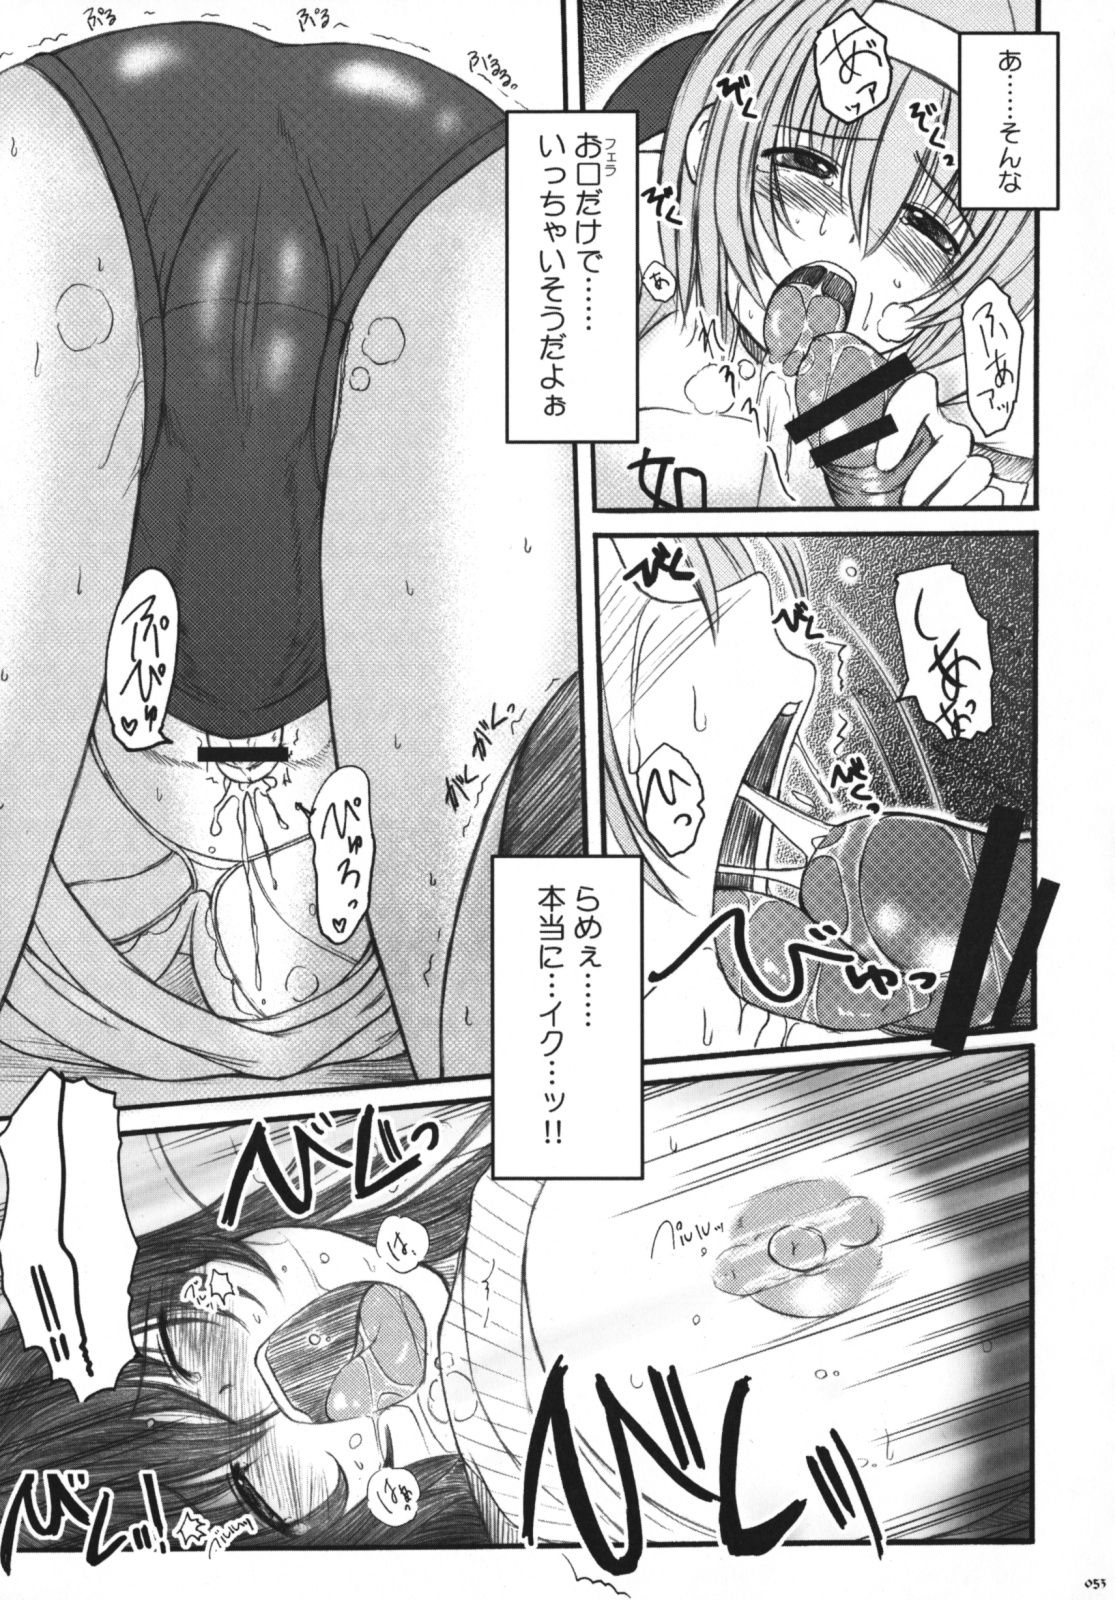 [Kesson Shoujo] Kesson Shoujo Memories 3 -Futanari Ero Manga- 51